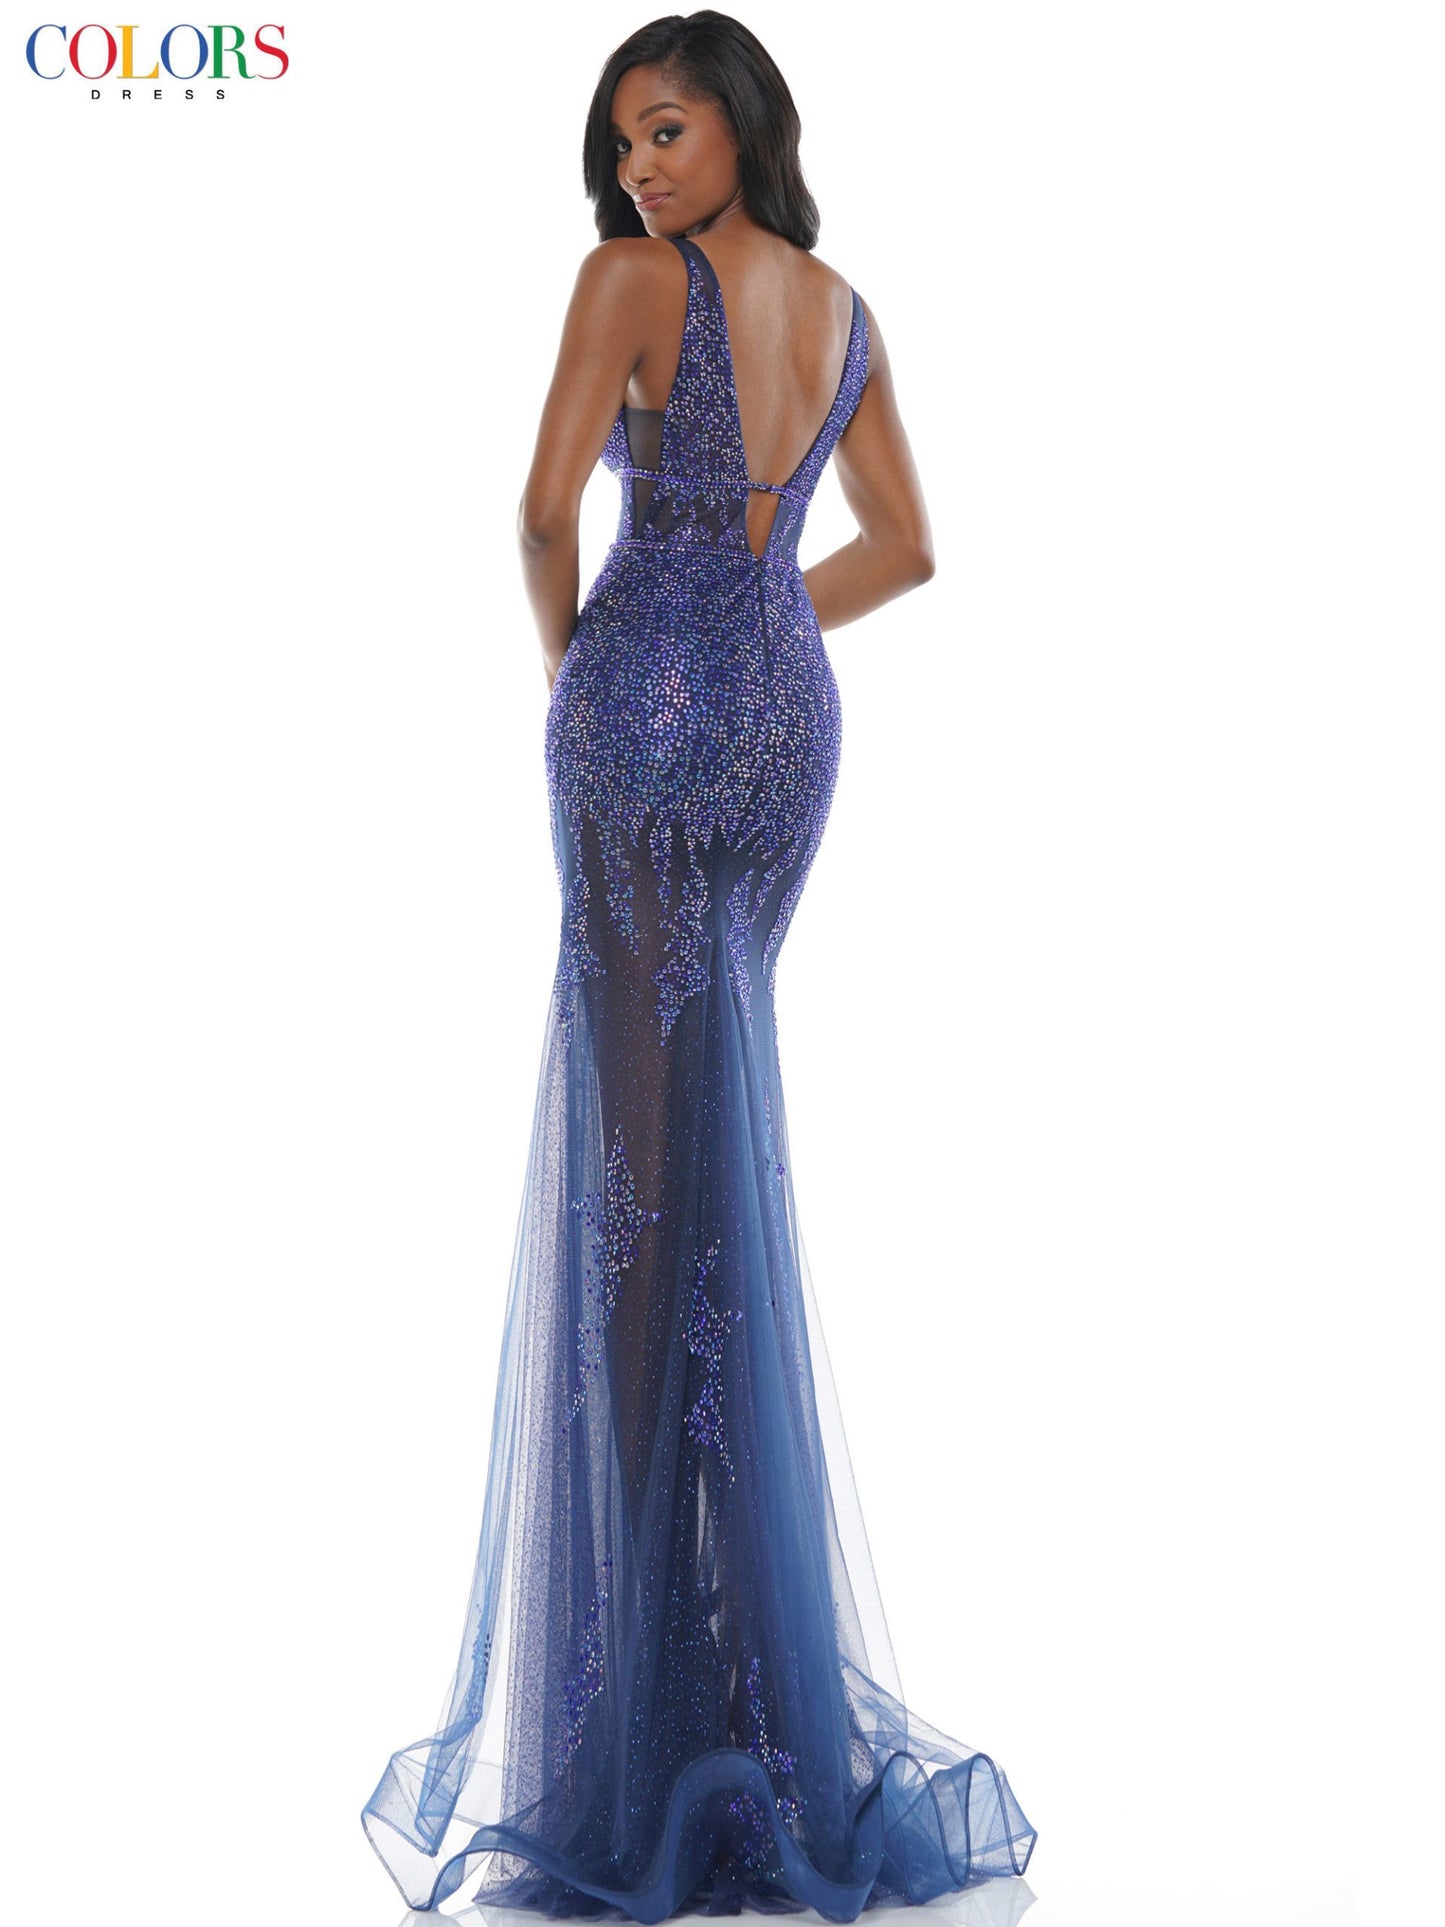 Colors-2563-royal-prom-dress-back-embellished-v-neckline-sheer-horsehair-trim